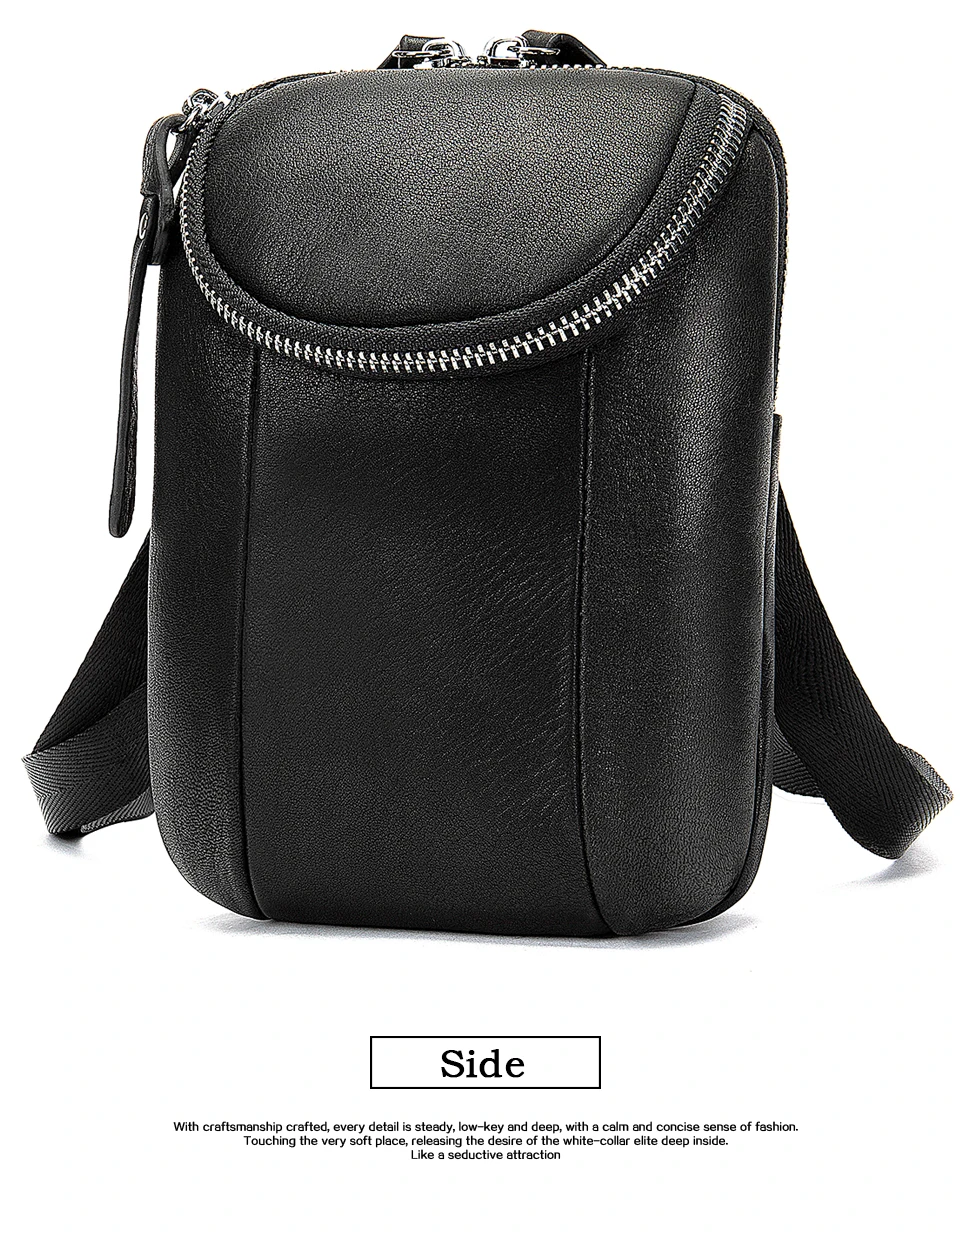 WESTAL поясная сумка из натуральной кожи, поясная сумка, сумка для телефона, сумки, повседневная дорожная поясная сумка, Мужская поясная сумка, кожаная сумка 9818